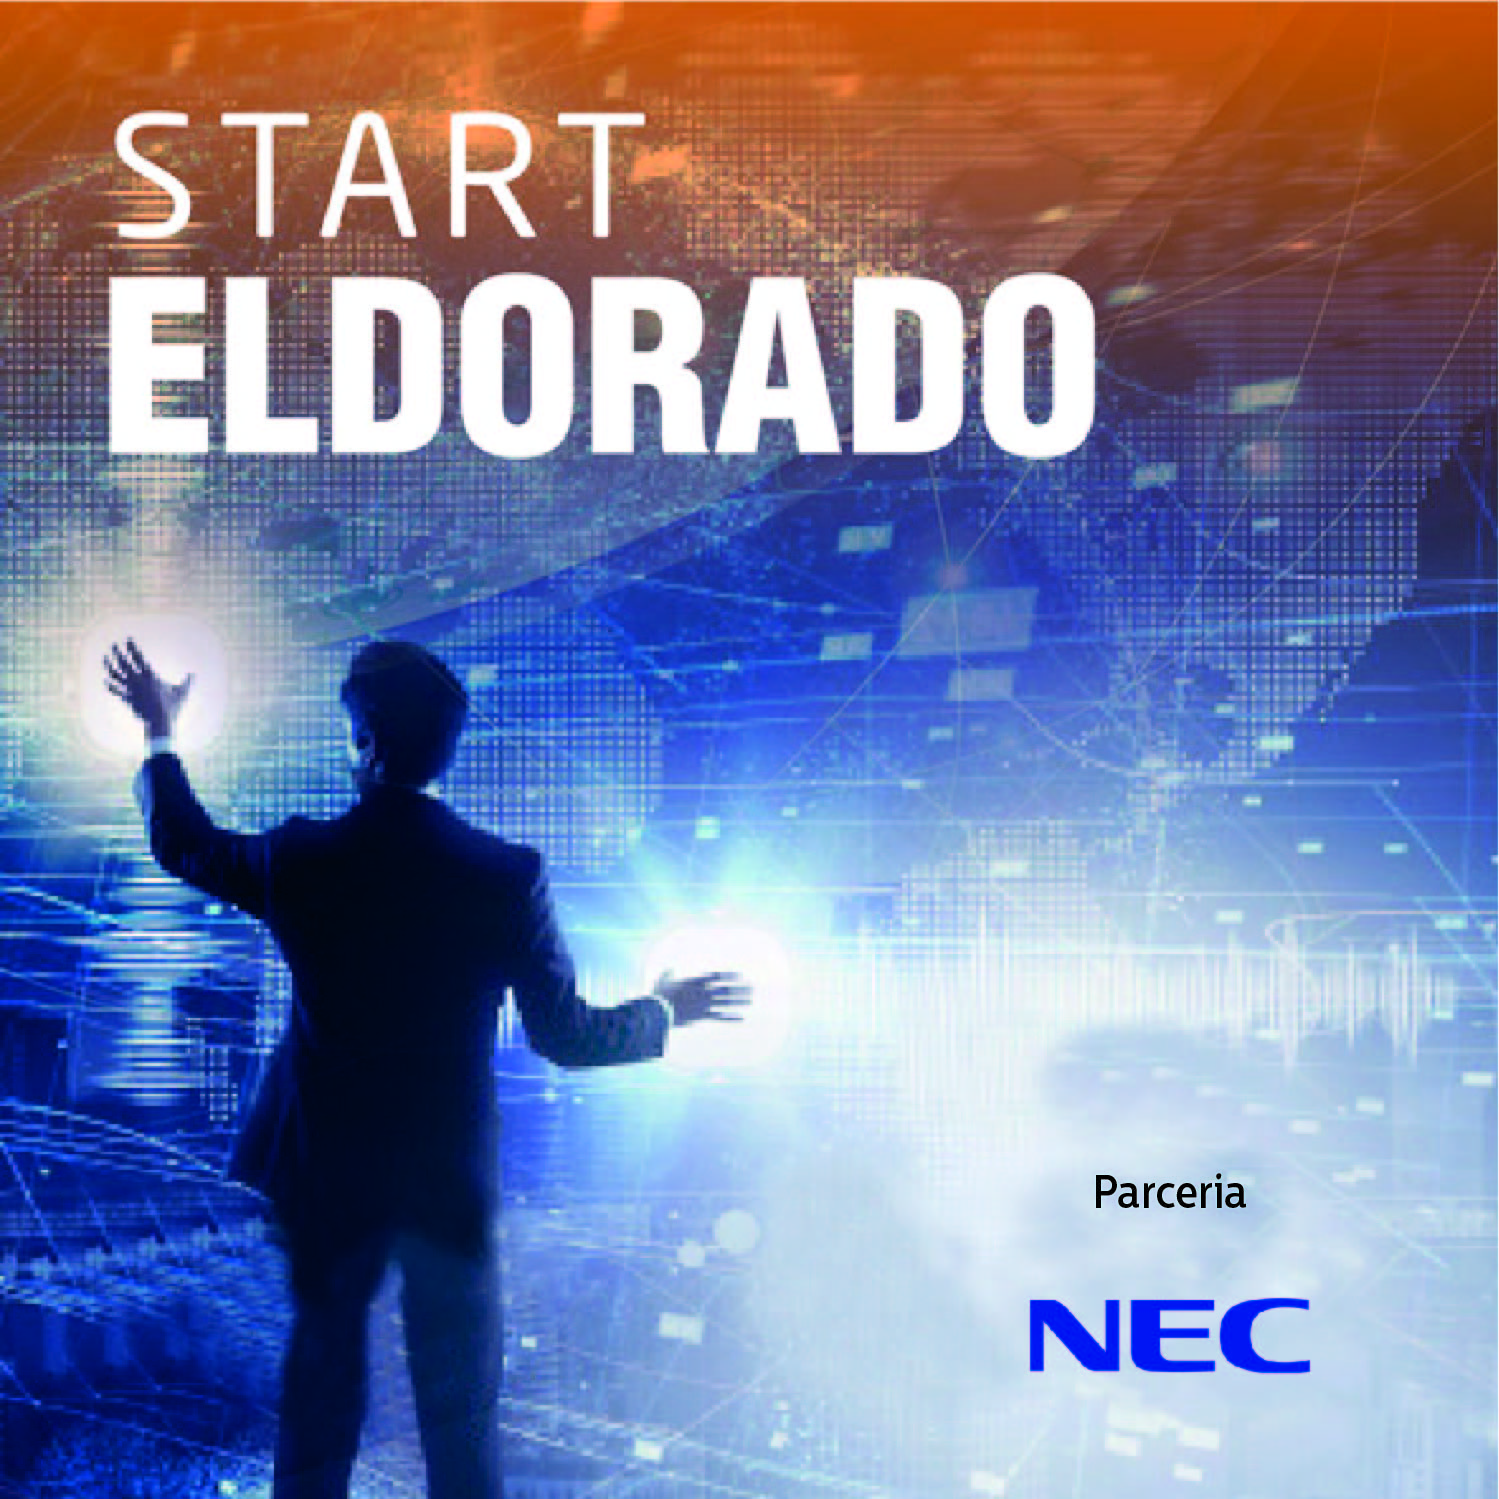 Tecnologia #270: #Start Eldorado: soluções digitais e conectividade nos negócios